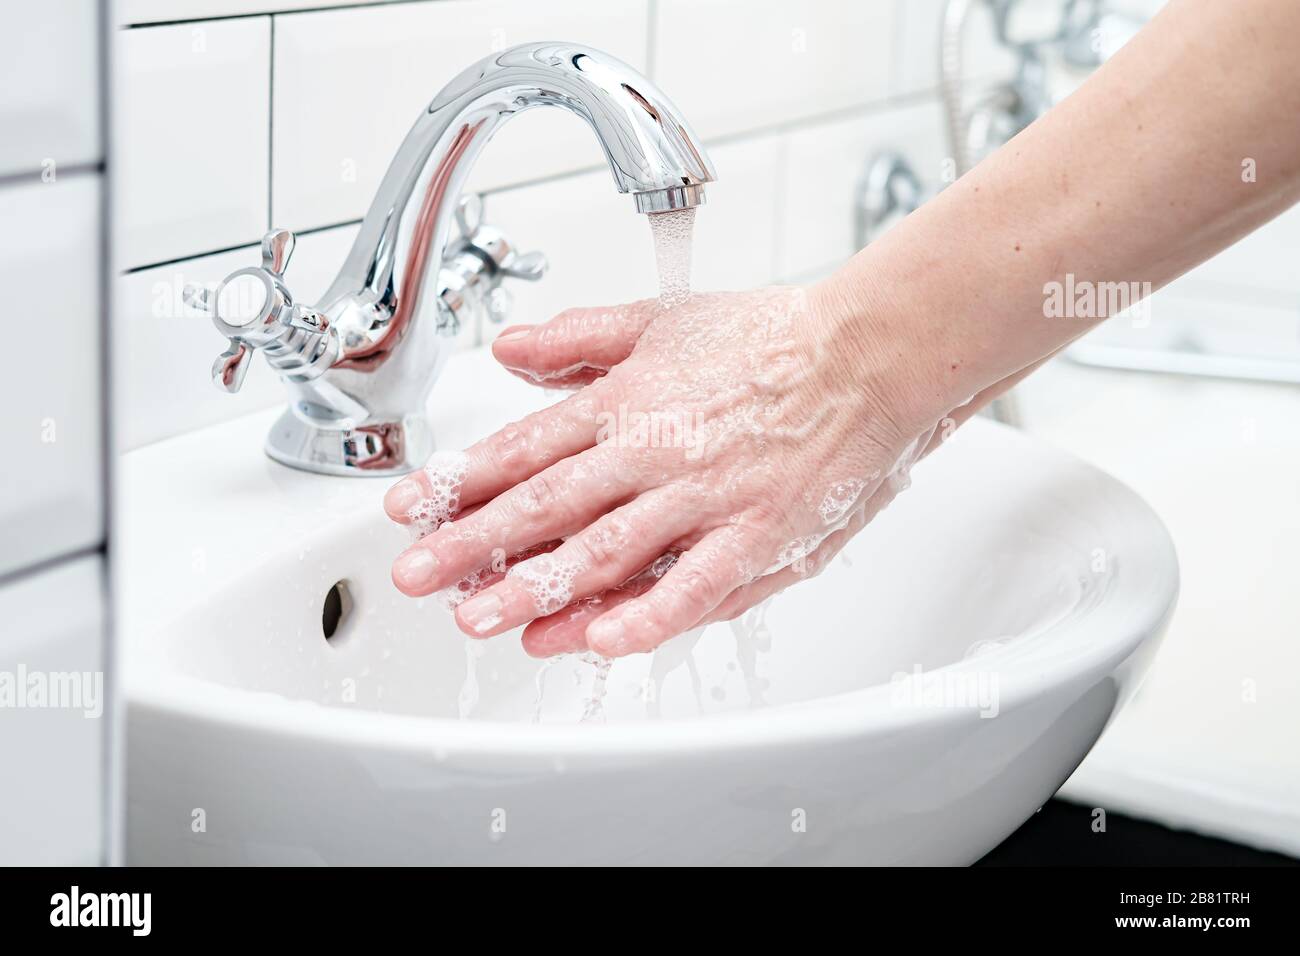 Laver les mains avec du savon sous l'eau courante pour protéger contre un virus dangereux. Concept de santé. Gros plan. Banque D'Images